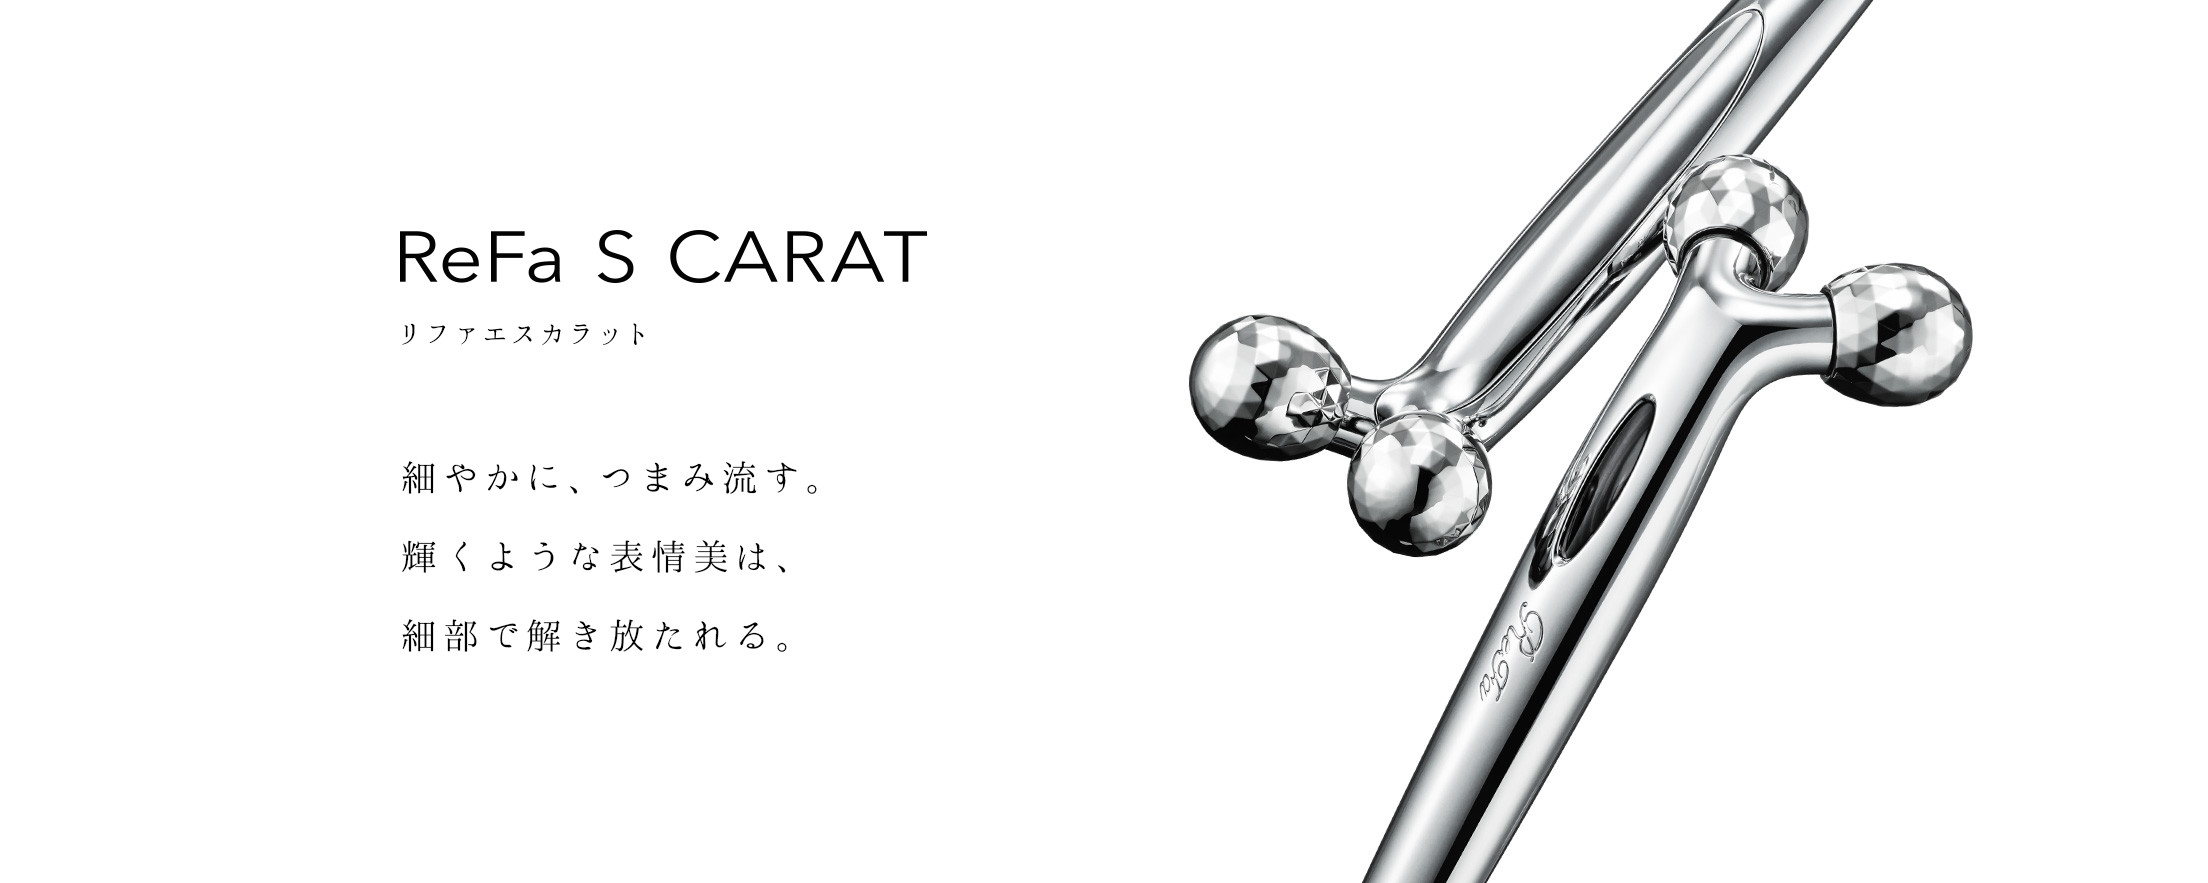 リファエスカラット - ReFa S CARAT | 商品情報 | ReFa（リファ）公式ブランドサイト